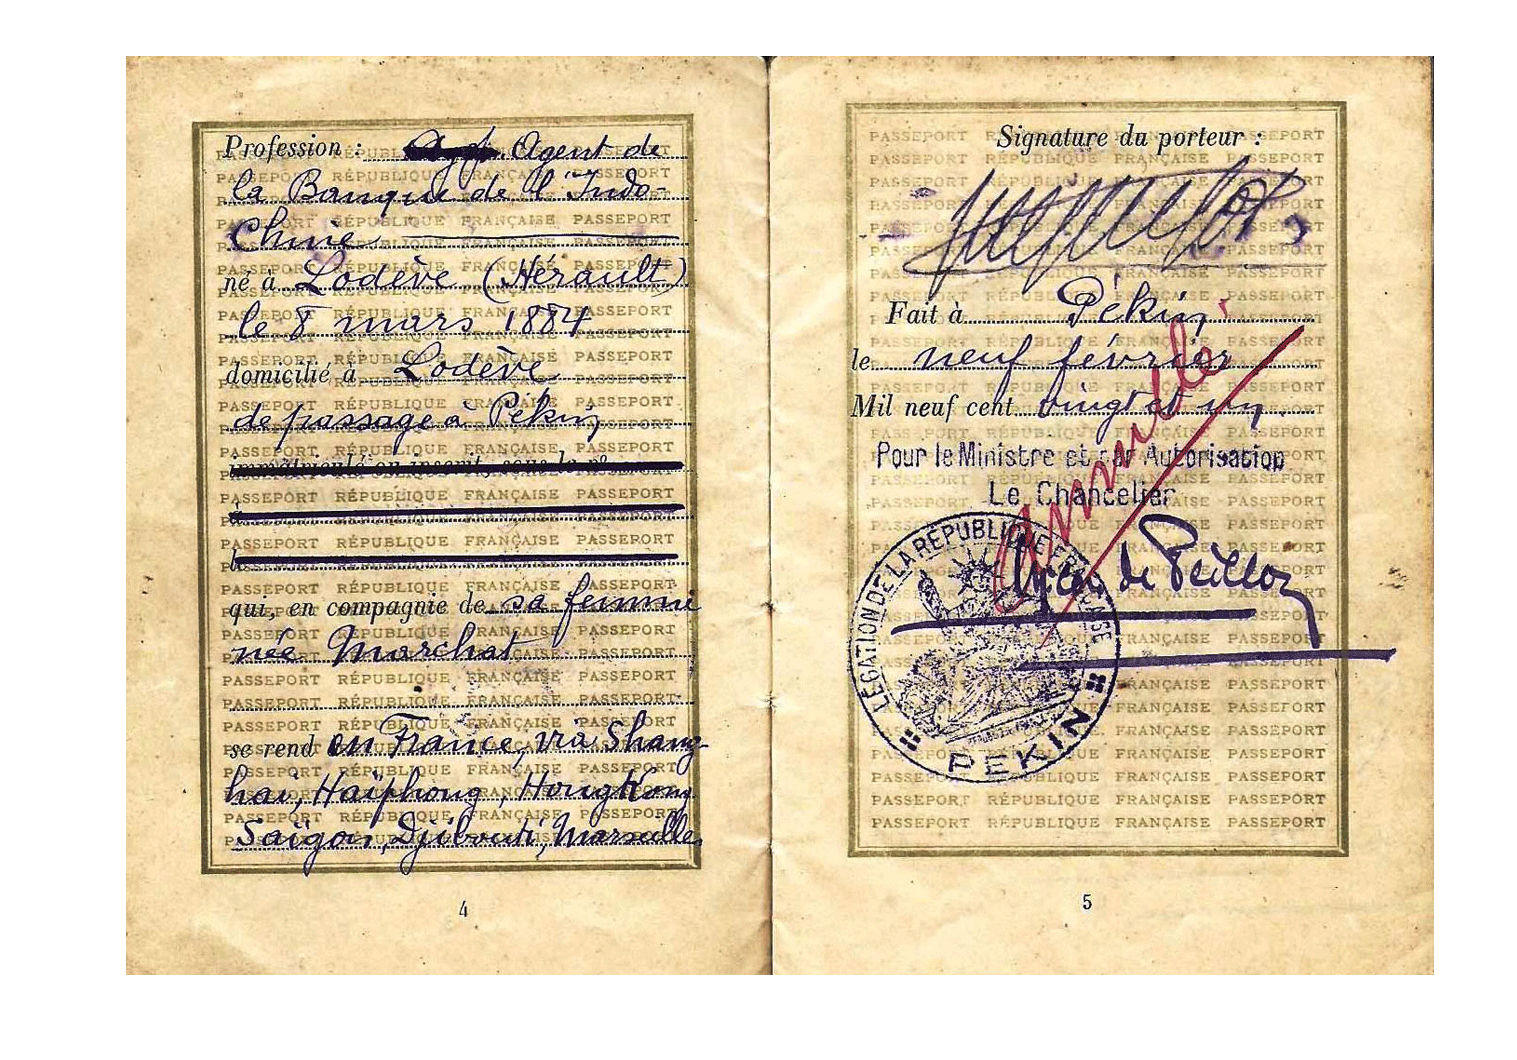 1921 Beijing passport